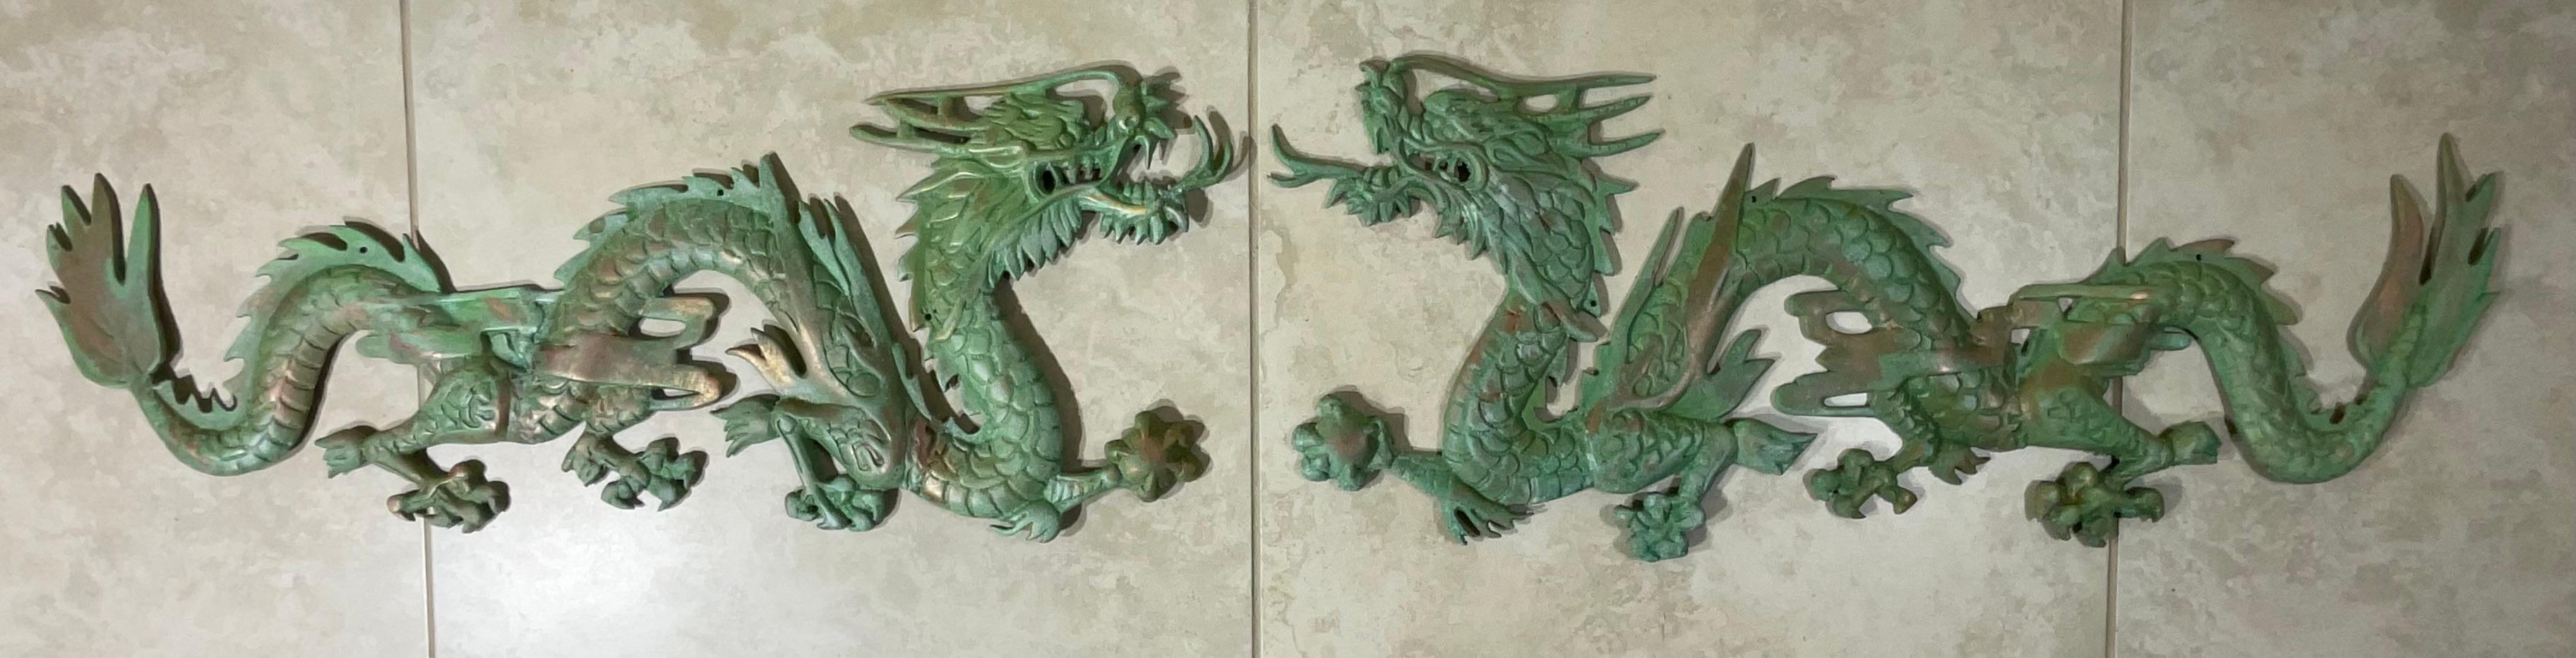 Magnifique paire de suspensions murales en laiton massif représentant un dragon chinois ancien détaillé.
Belle patine d'oxydation, décoration murale.
Un objet d'art exceptionnel à exposer au mur.